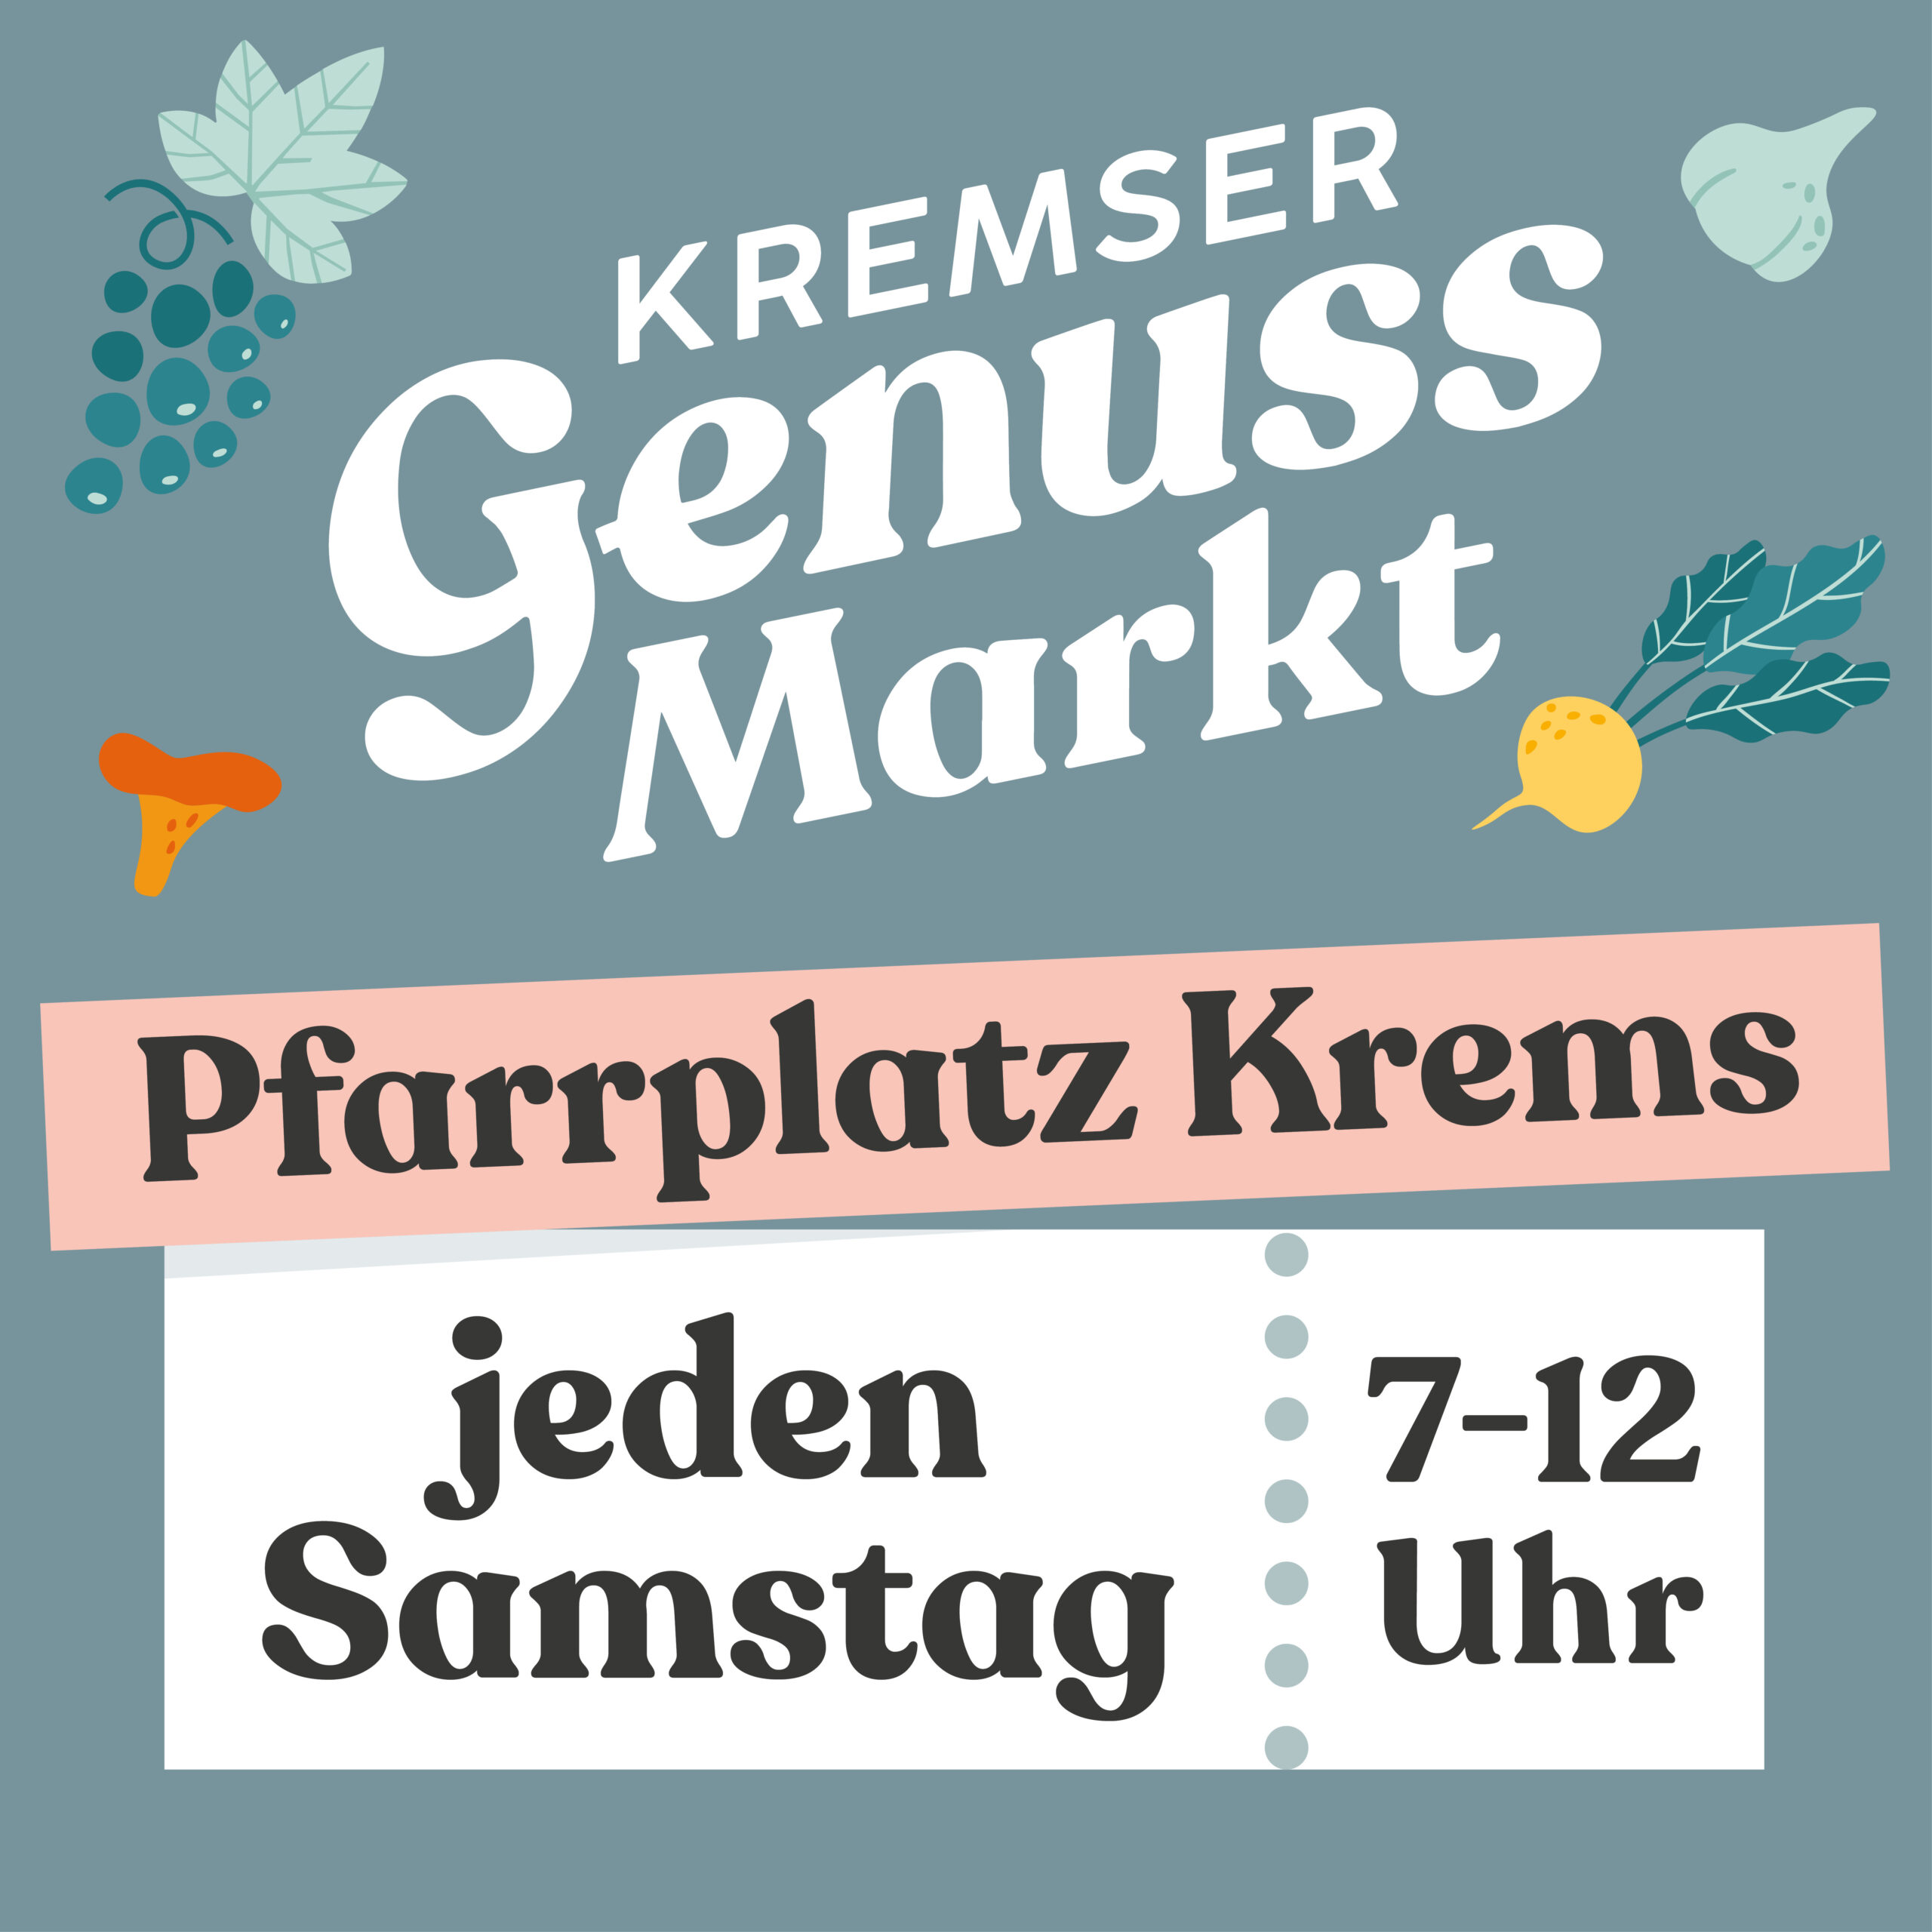 Kremser Genussmarkt